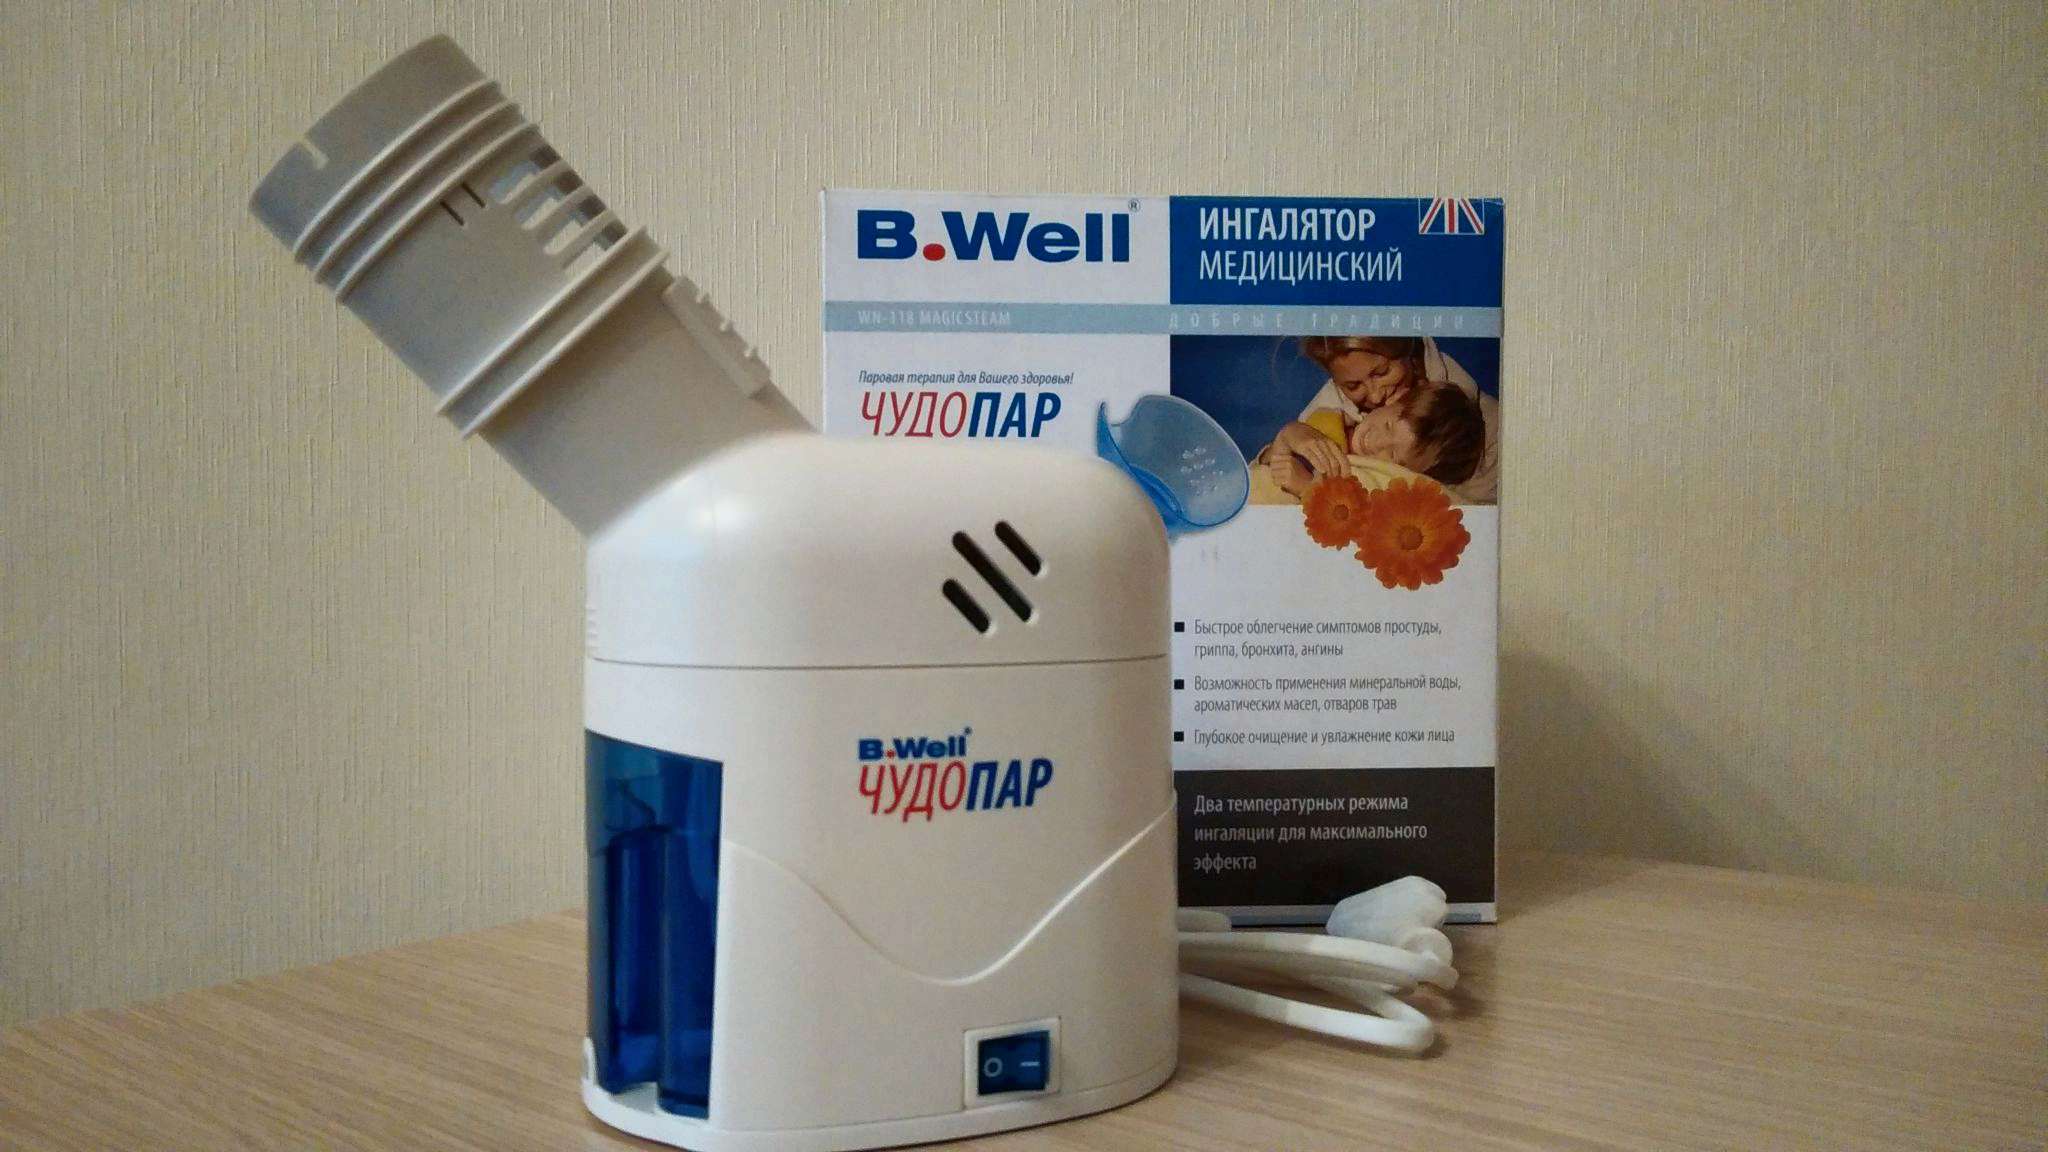 Ингалятор чудопар ингалятор для лечения астмы